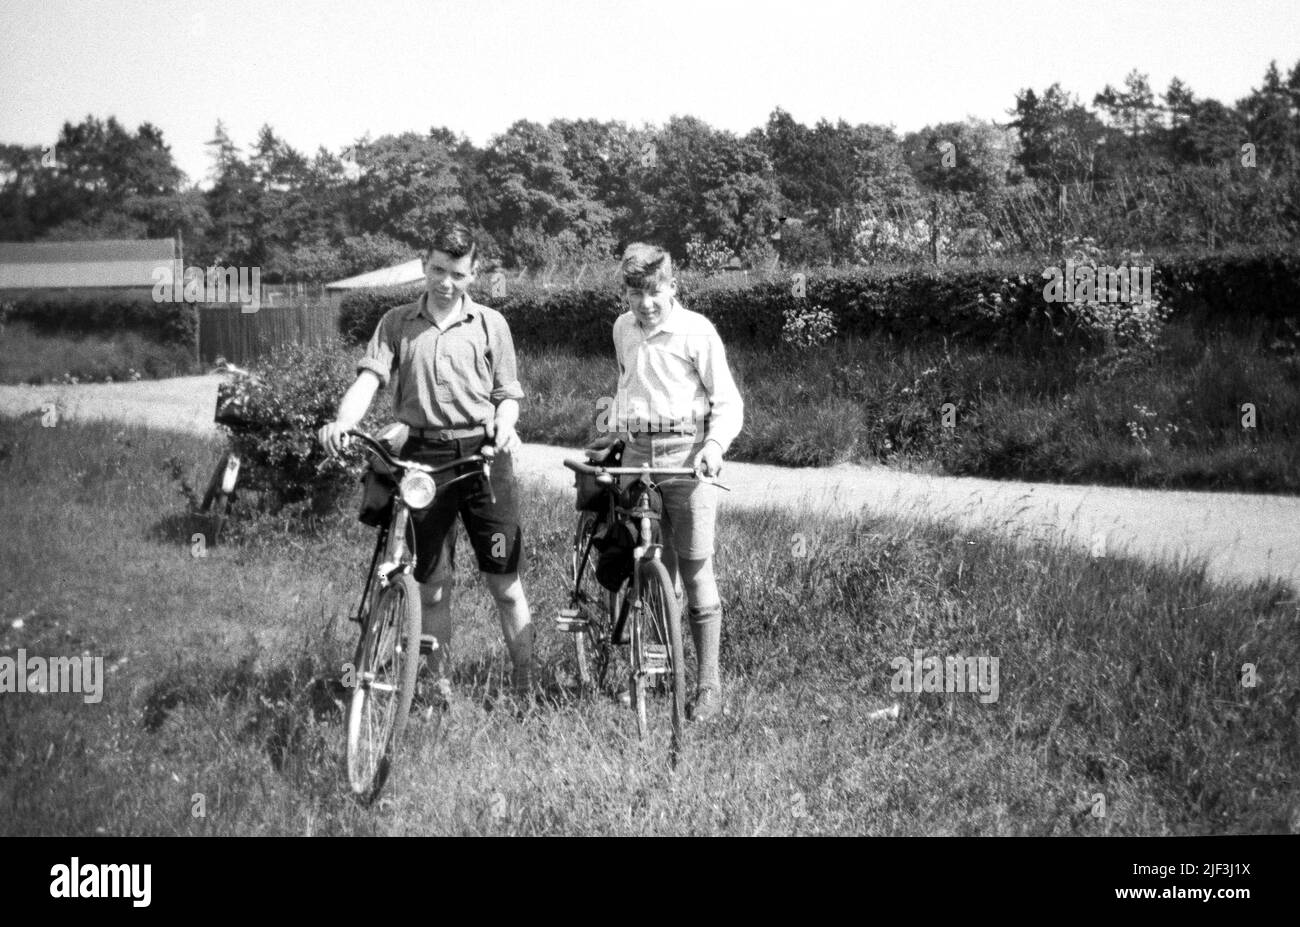 1930s, historisch, zwei ältere Teenager-Jungen, die mit ihren Fahrrädern draußen auf einer Wiese neben einer Landstraße stehen, Newbury, Berks, England, Großbritannien. Stockfoto